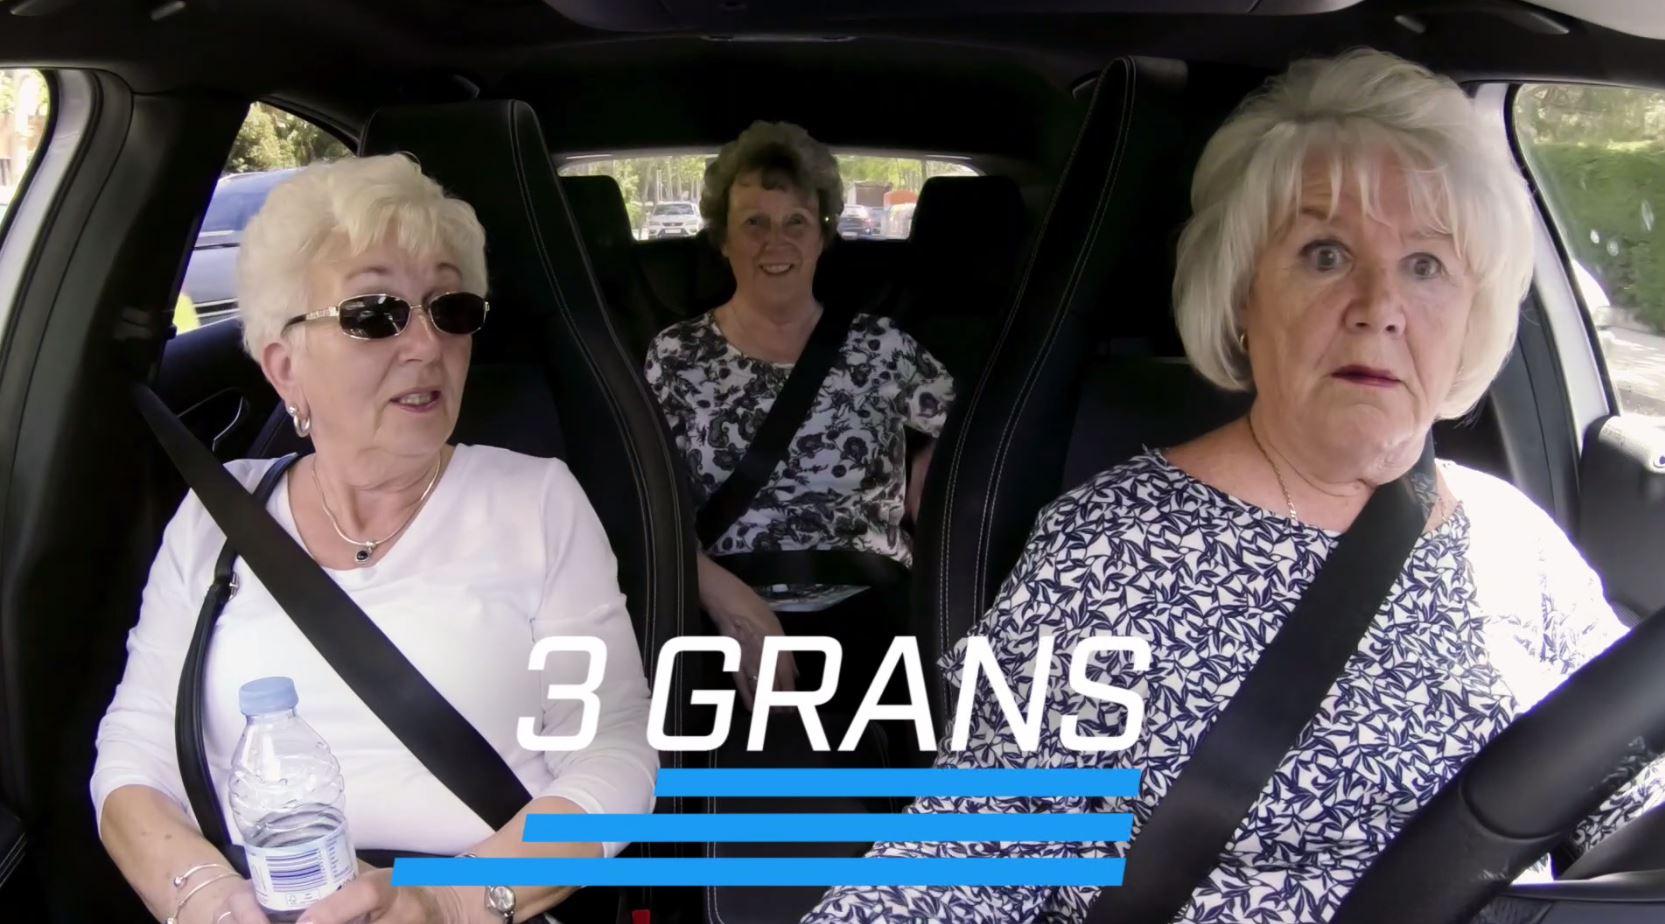 Описанное как «Top Gear встречает Тельму и Луизу», в этом путешествии три женщины из Манчестера путешествуют по Испании со своими веселыми, насыщенными действиями приключениями, снятыми на камеру